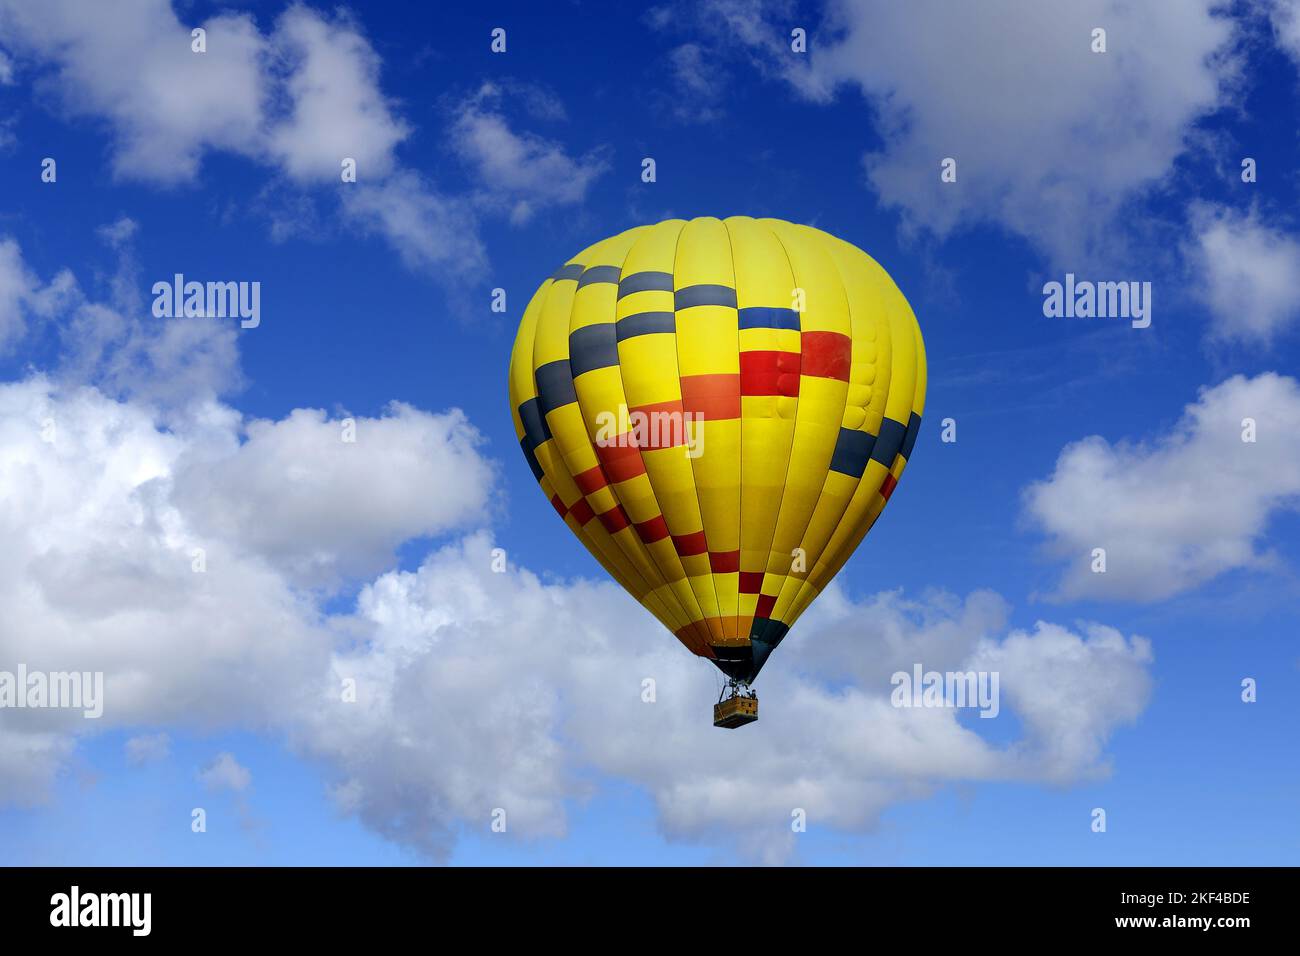 Heissluftballon, Monument Valley, Arizona, États-Unis Banque D'Images